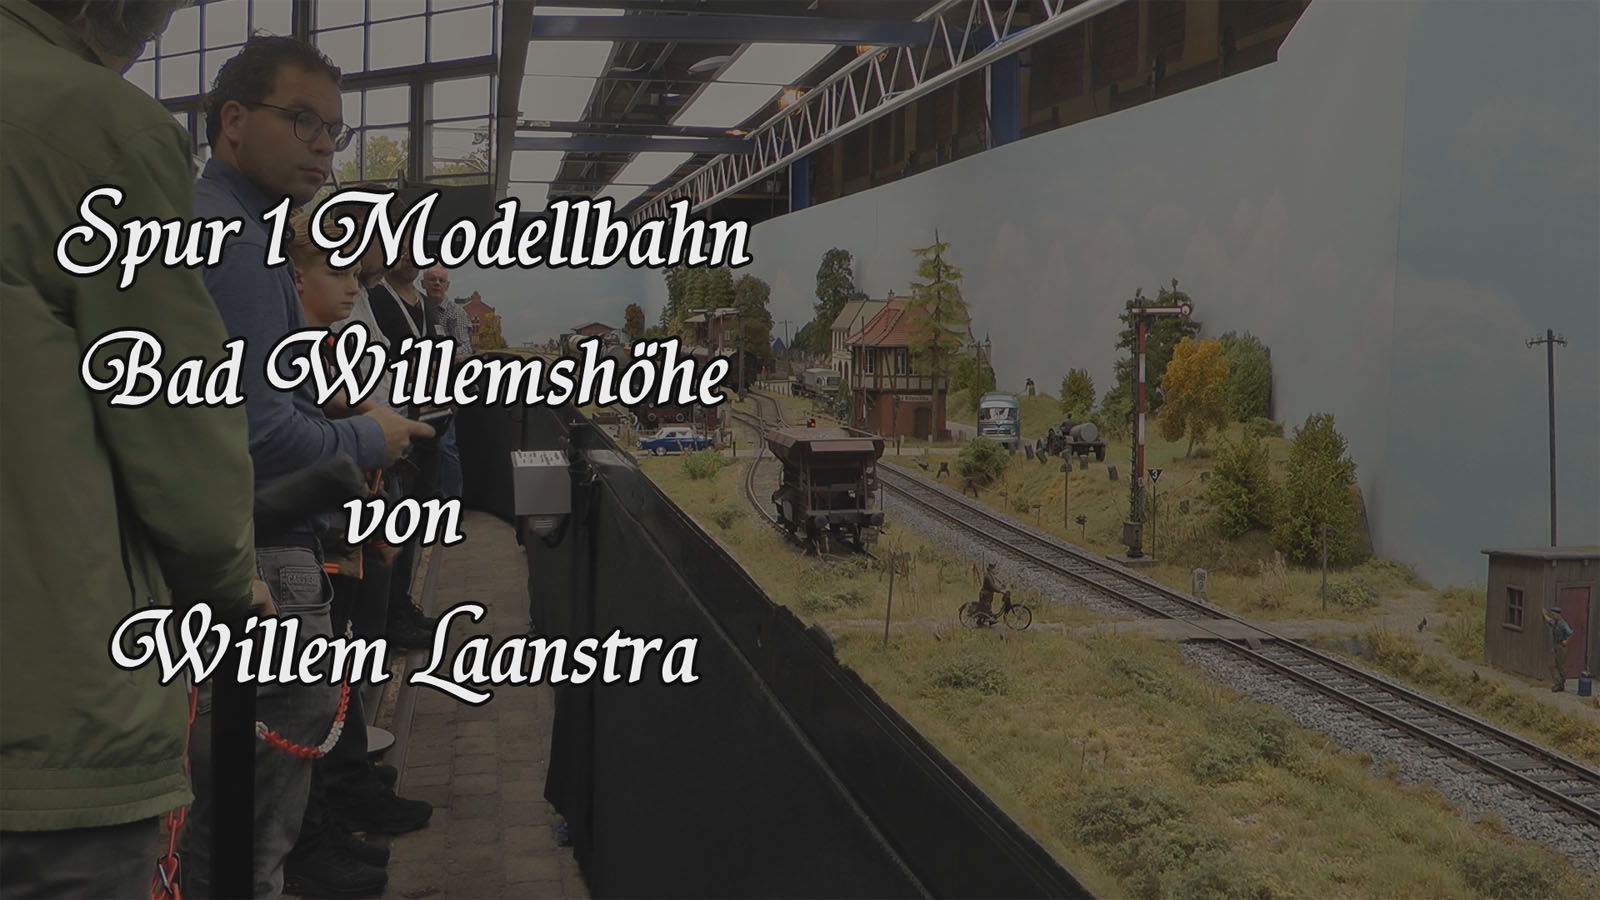 Spur 1 Modellbahn Bad Willemshöhe von Willem Laanstra mit Dampfloks und Dieselloks